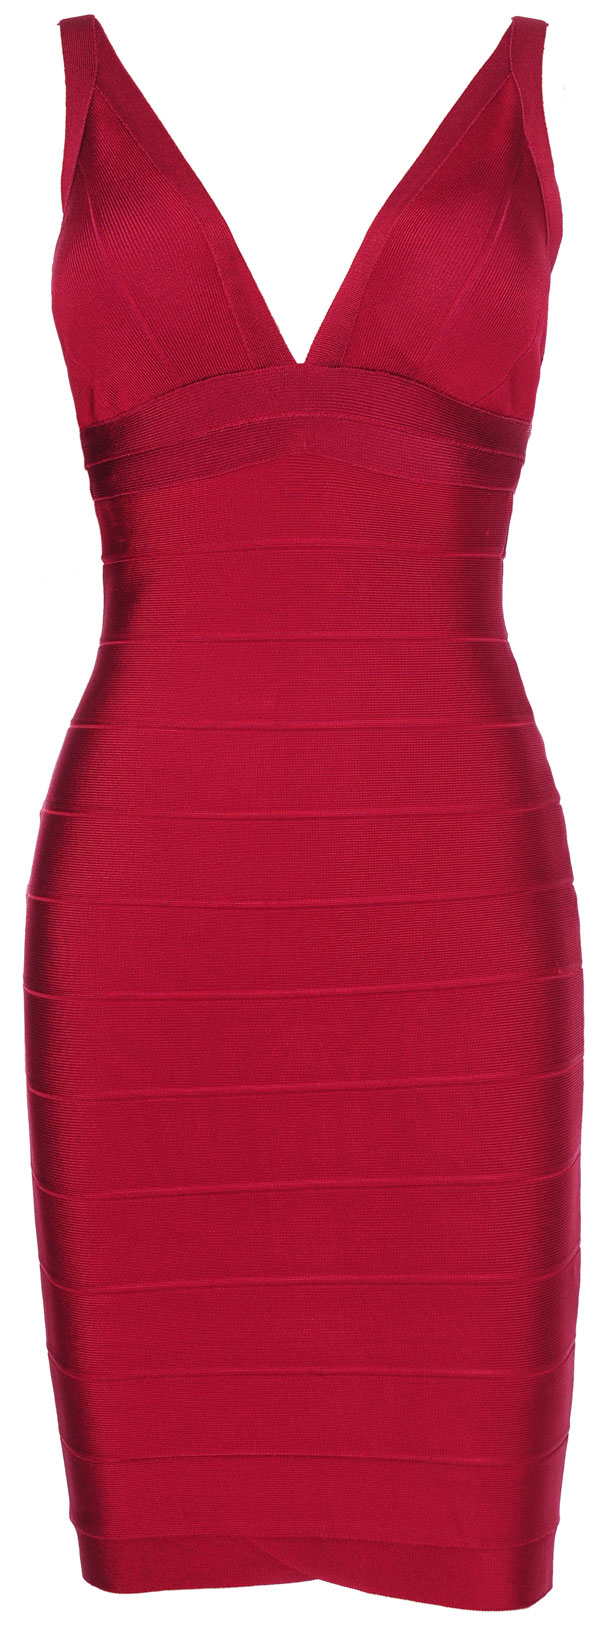 Red Bandage Dress